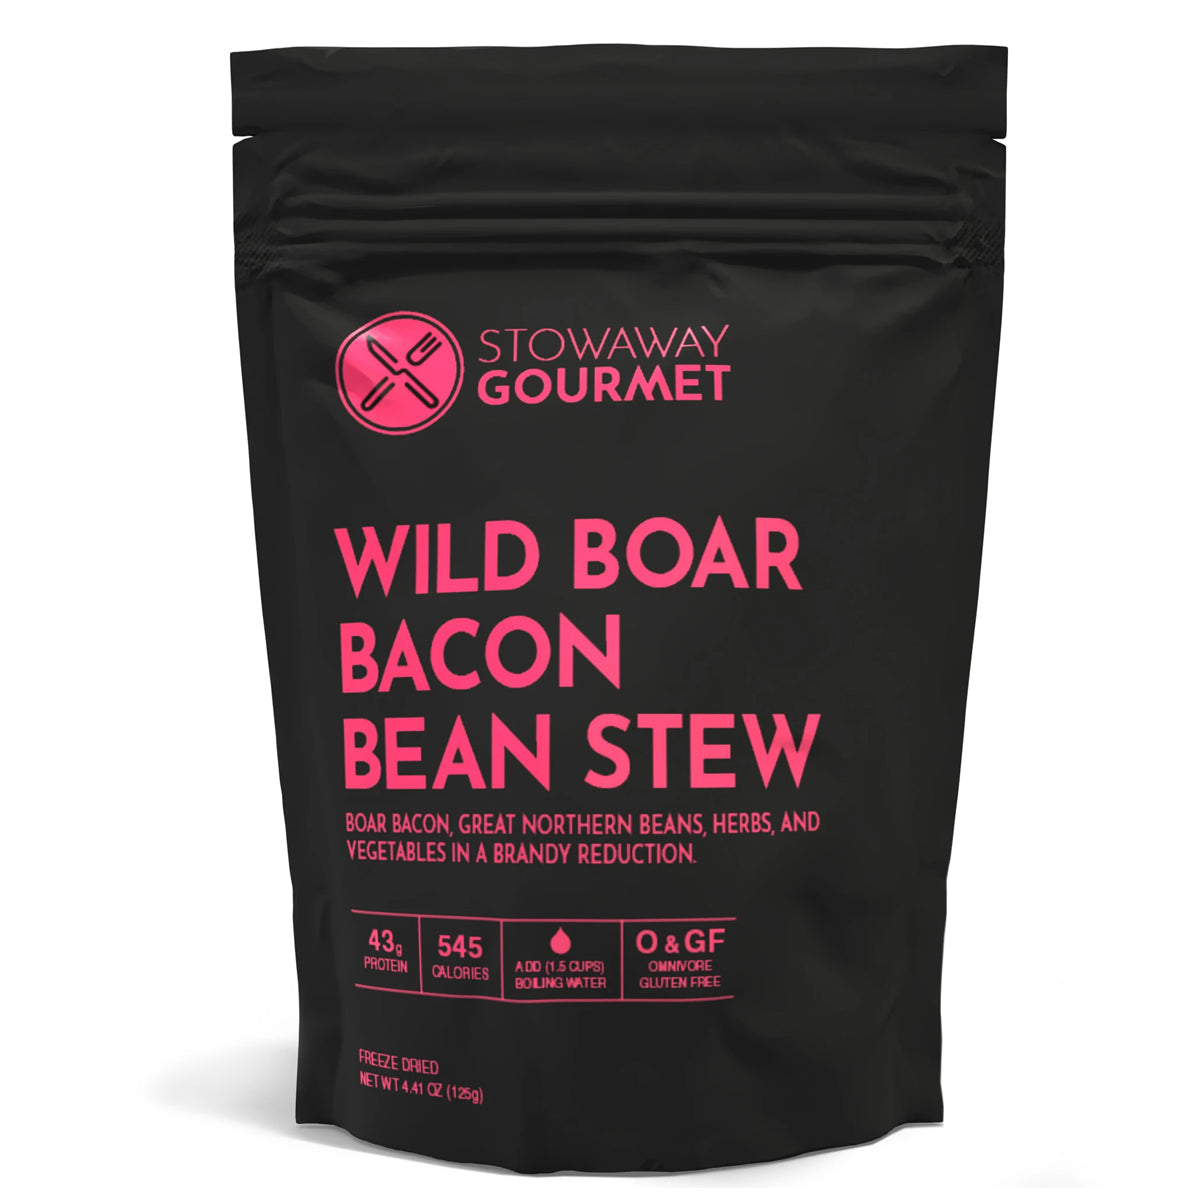 Stowaway Gourmet Wild Boar Bacon Bean Stew